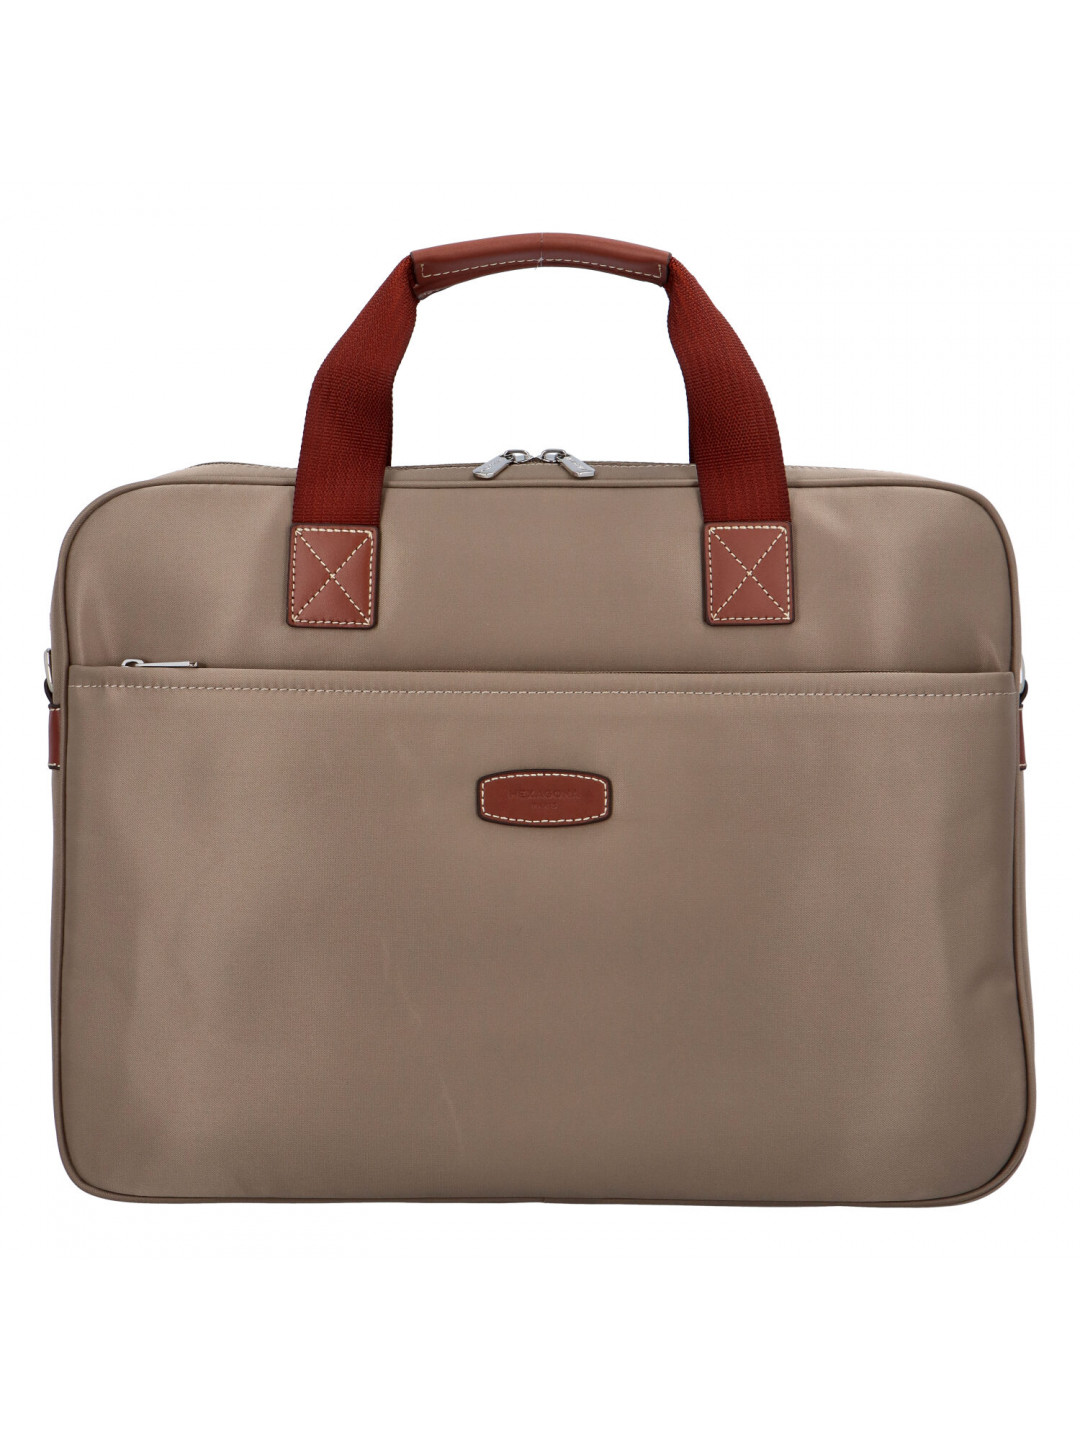 Luxusní taška na notebook světlá taupe – Hexagona 171176